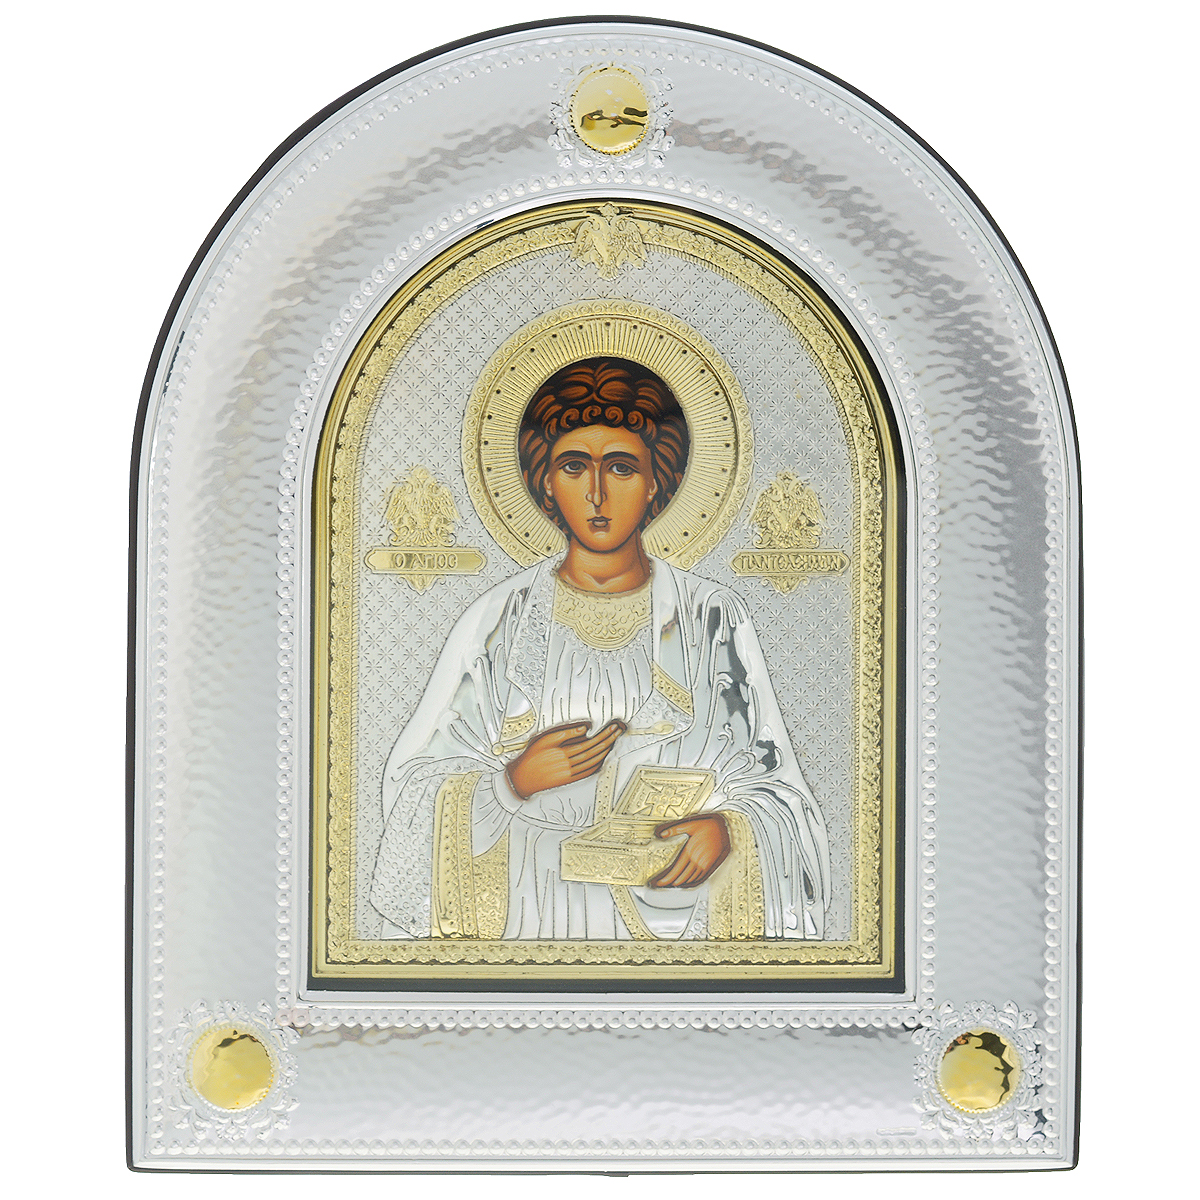 Икона Святого Великомученика и целителя Пантелеимона, 30 см х 25,2 см